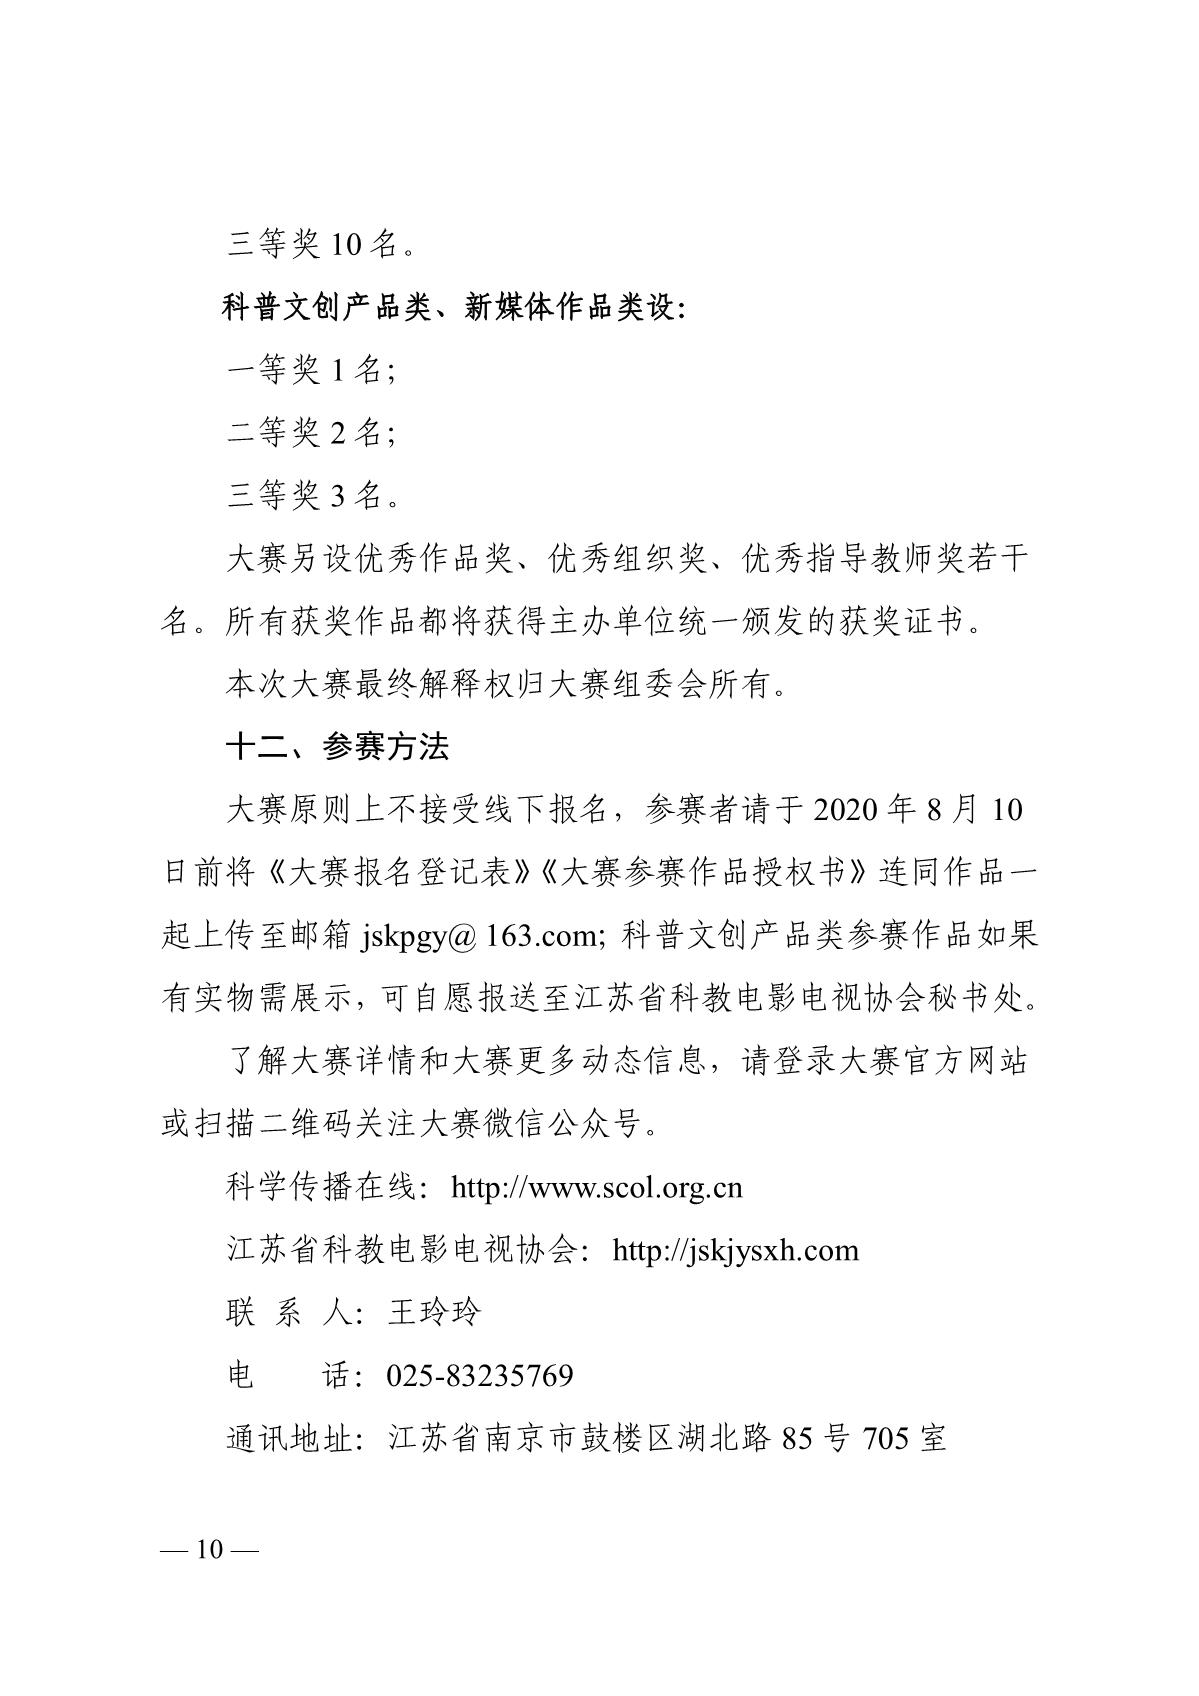 关于组织开展第六届江苏省科普公益作品大赛的通知（苏科协发〔2020〕46号）(1)_10.JPG